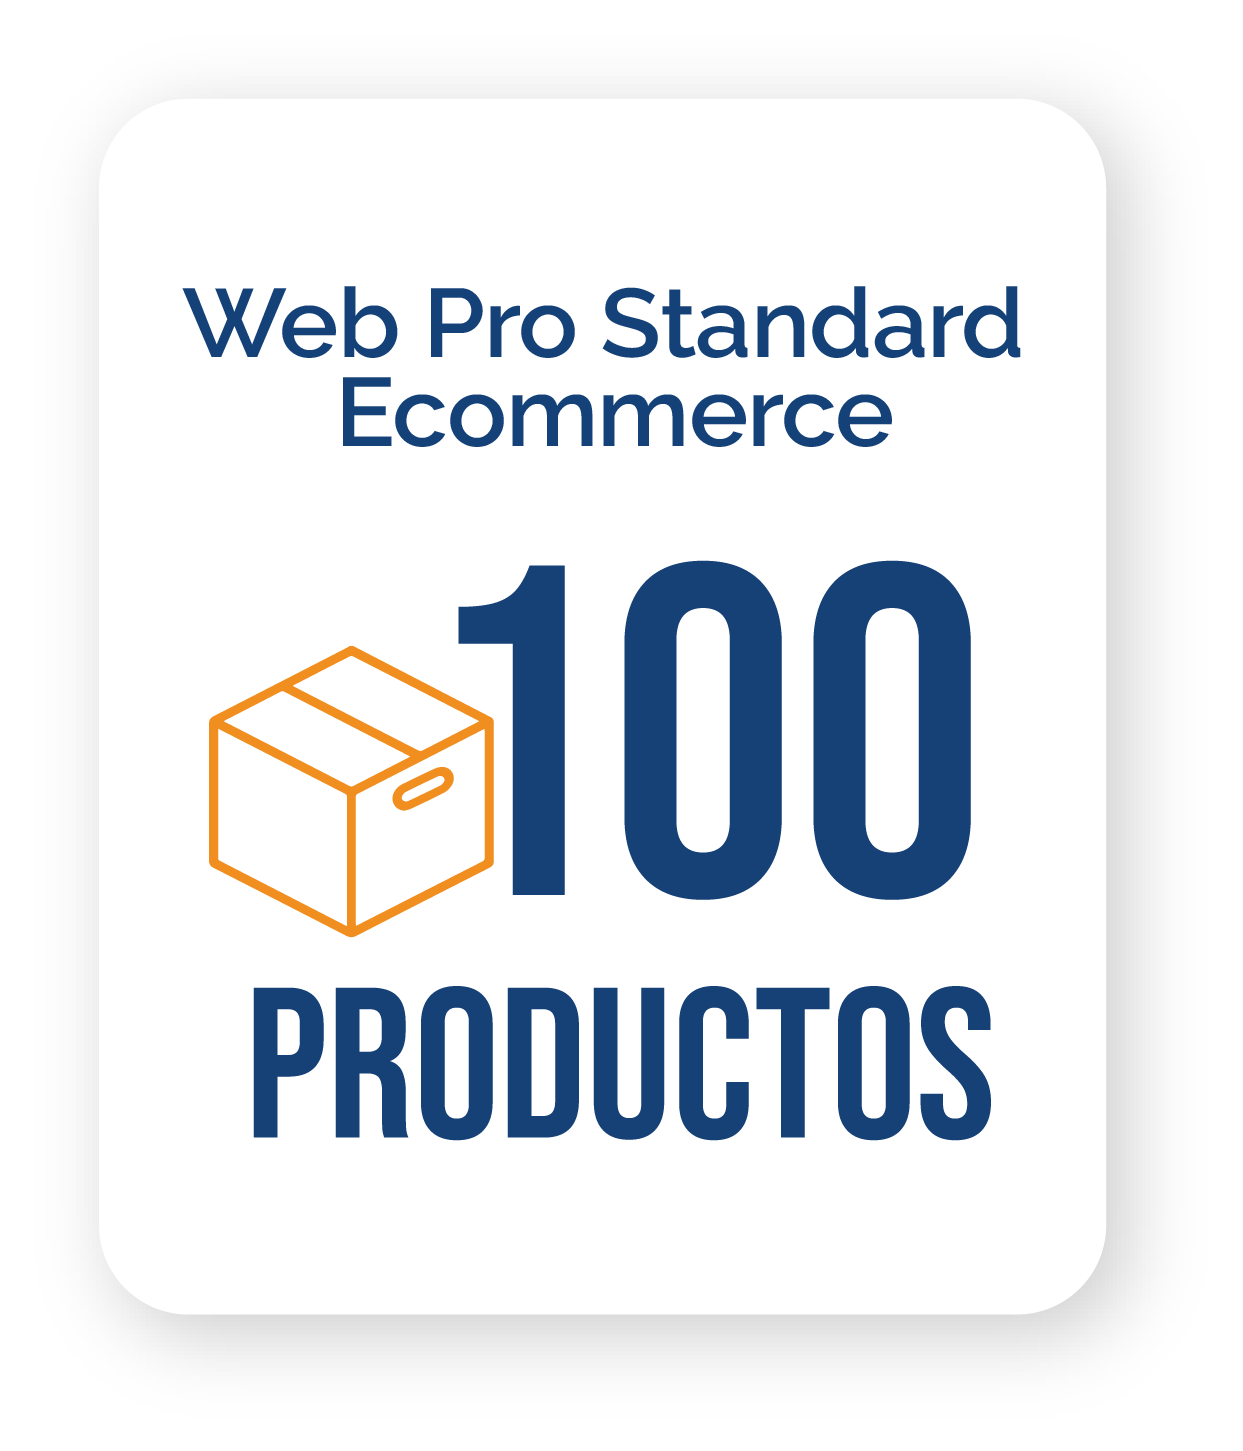 Una pegatina que dice web pro standard ecommerce 100 productos